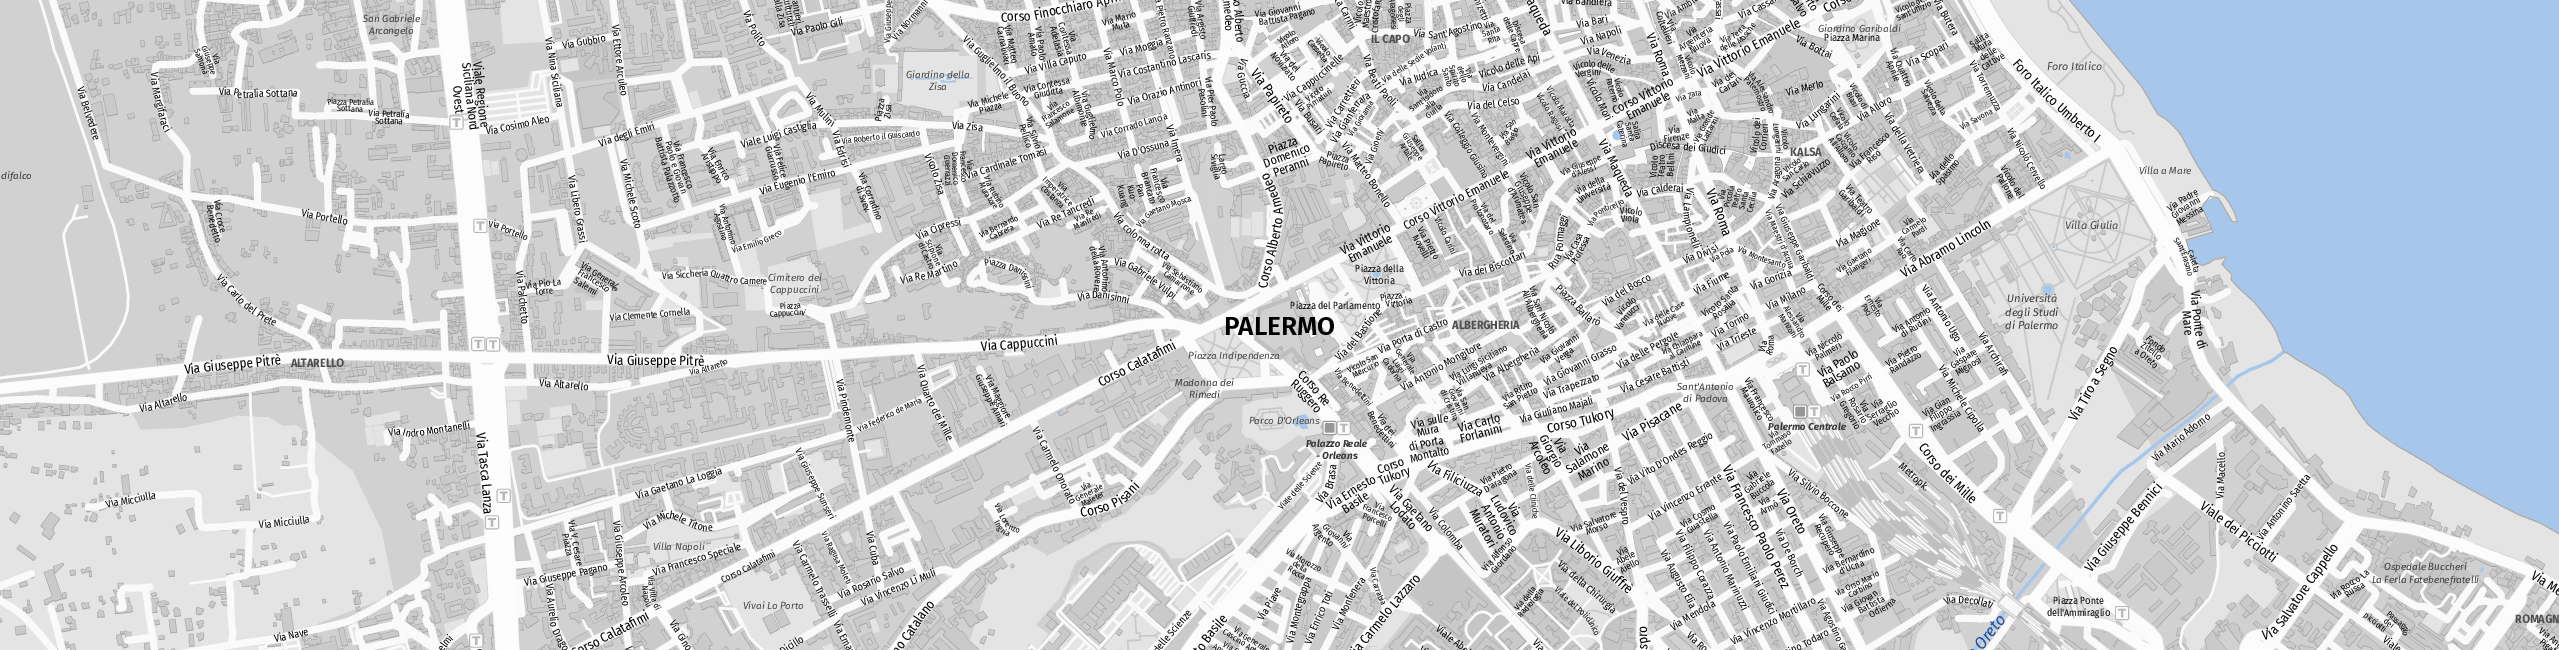 Stadtplan Palermo zum Downloaden.